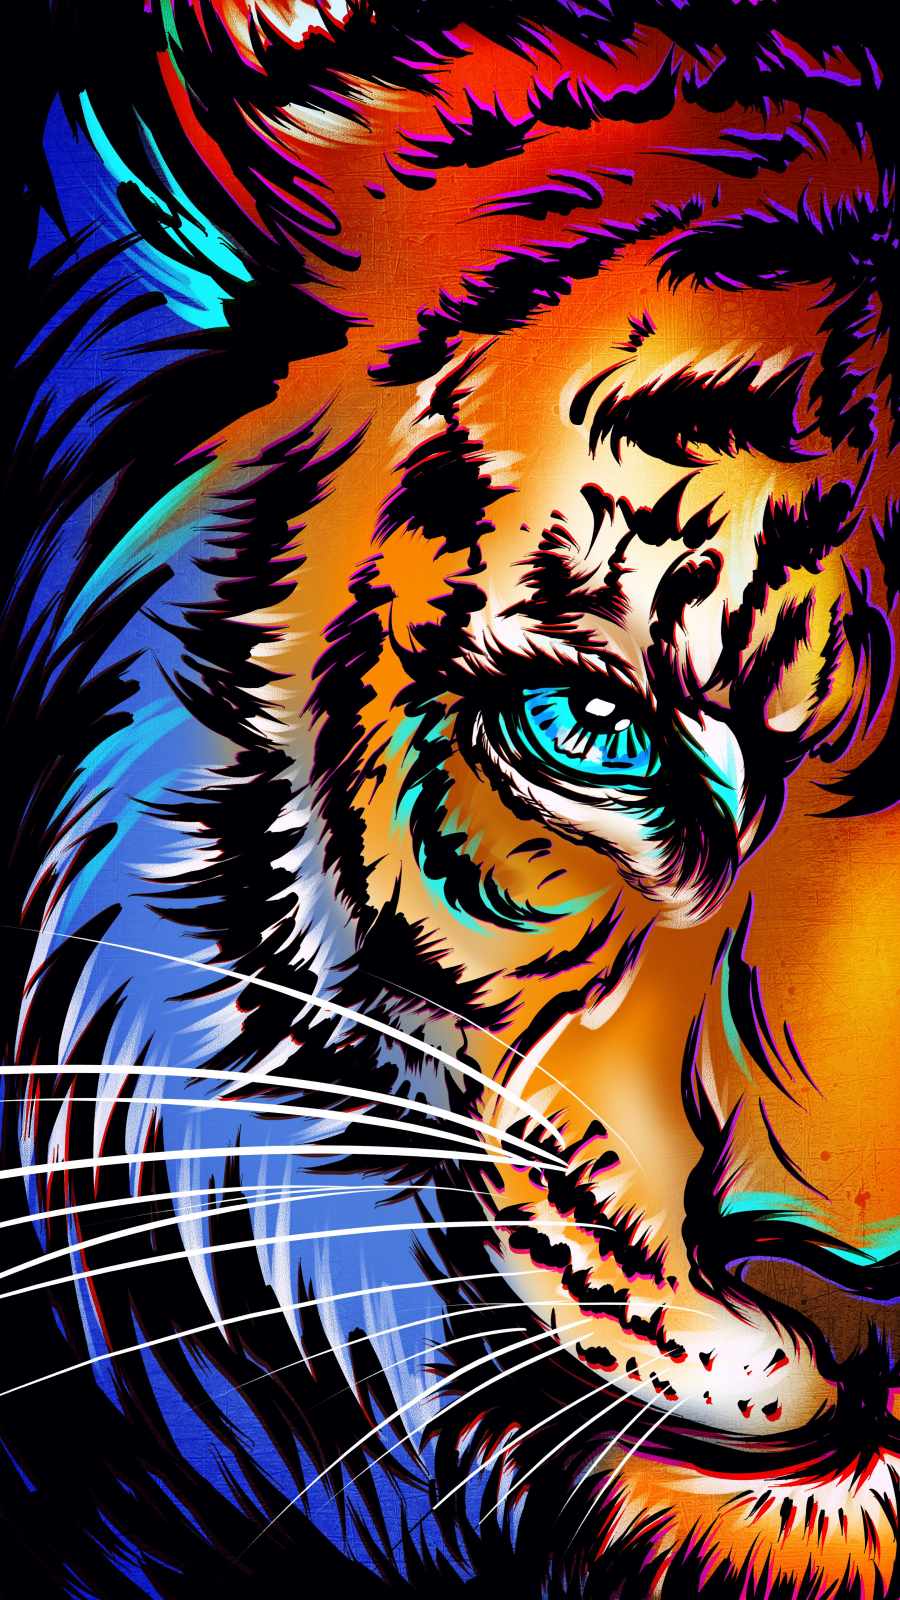 Eye of Tiger